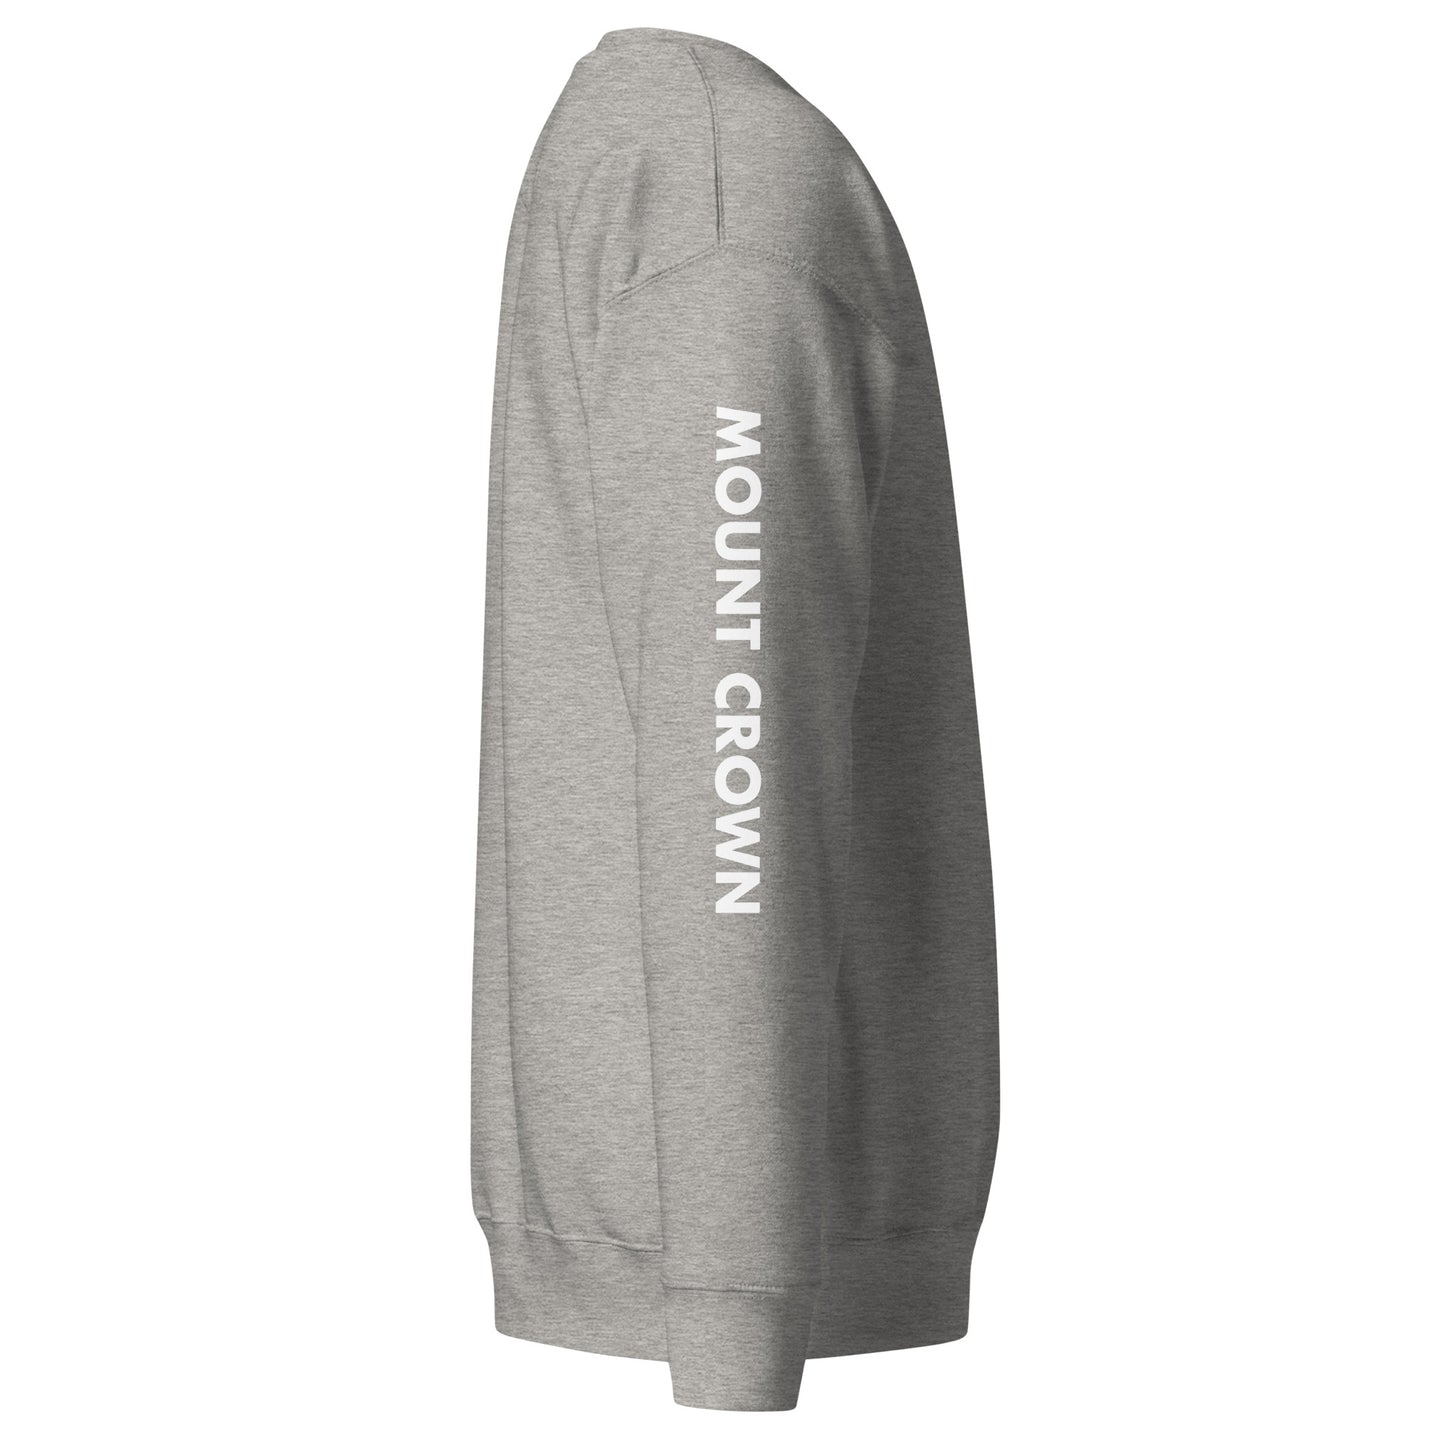 MOUNT CROWN Little Crown (W) Unisex Premium Sweatshirt